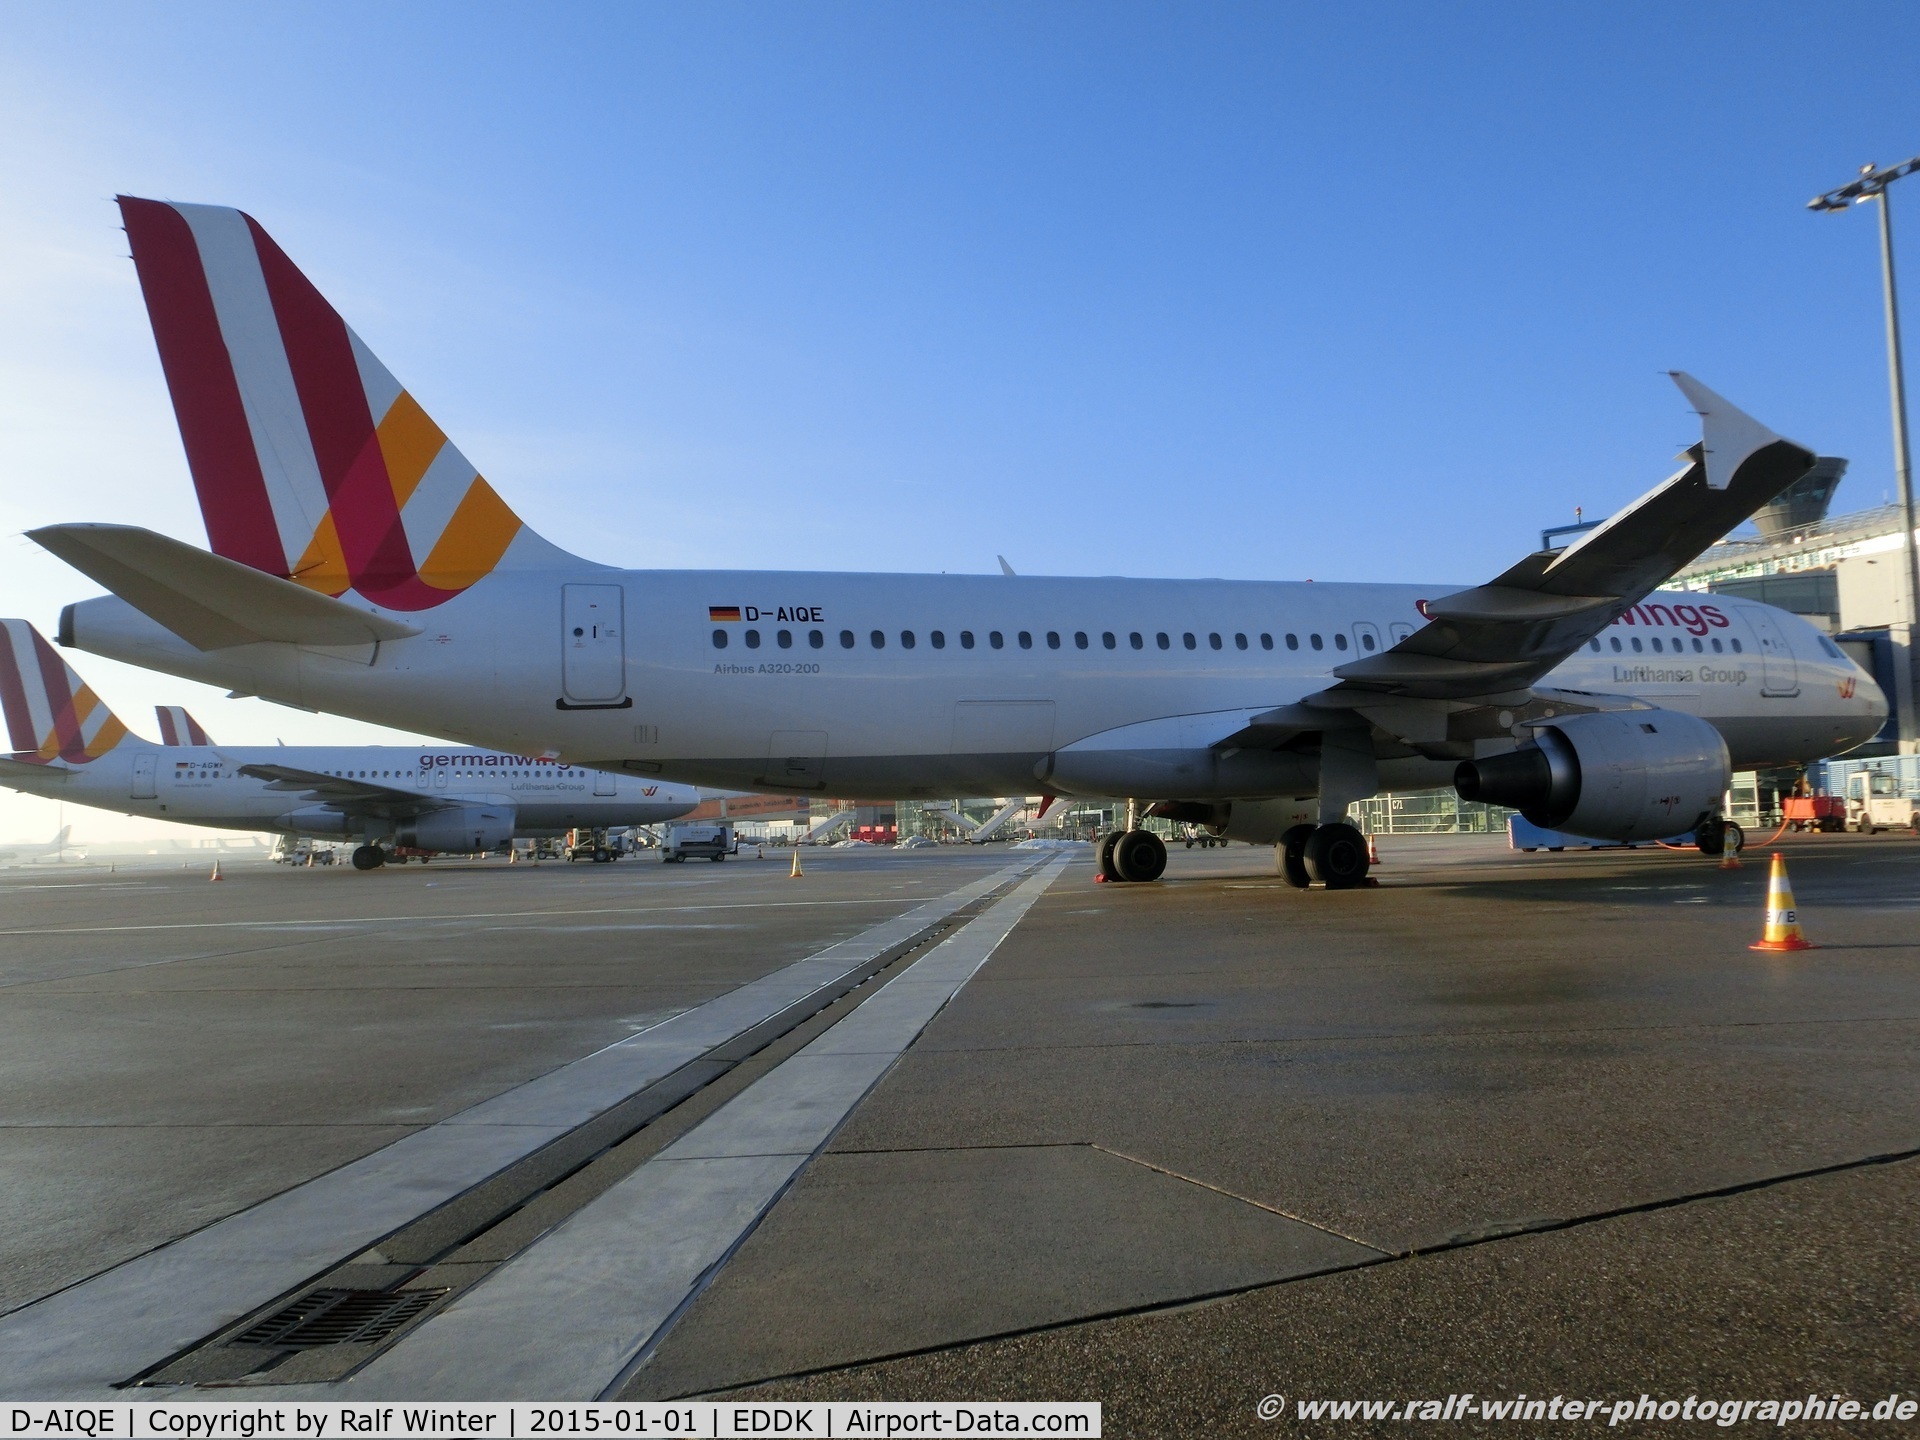 D-AIQE, 1991 Airbus A320-211 C/N 0209, Airbus A320-211 - 4U GWI Germanwings ex Lufthansa 'Gera' - 209 - D-AIQE - 01.01.2015 - CGN